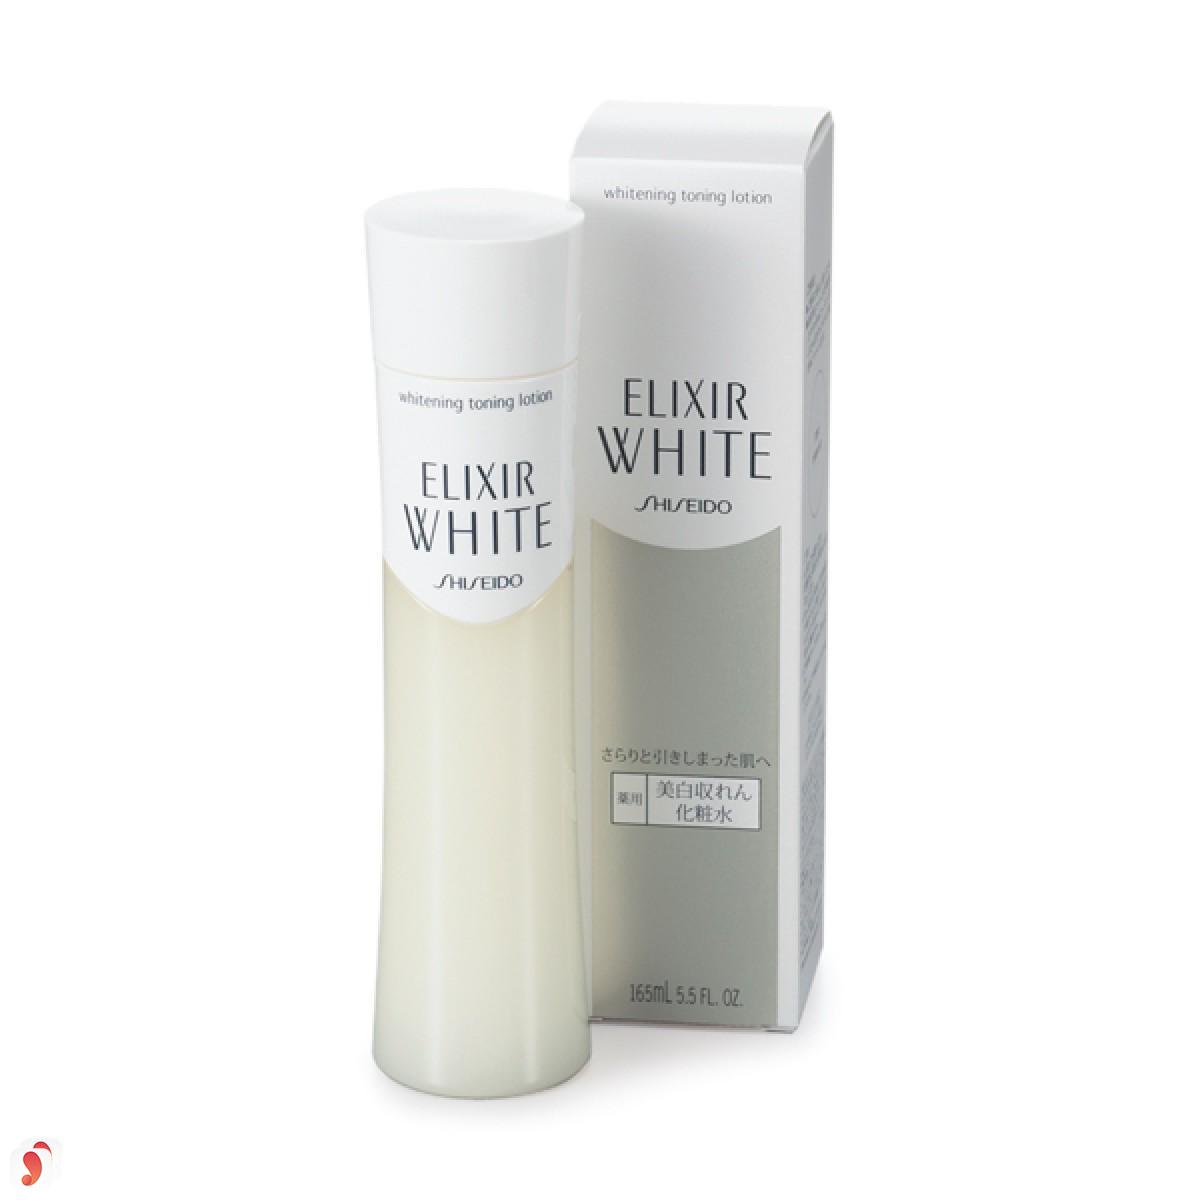 Shiseido Elixir White Whitening Clear 1